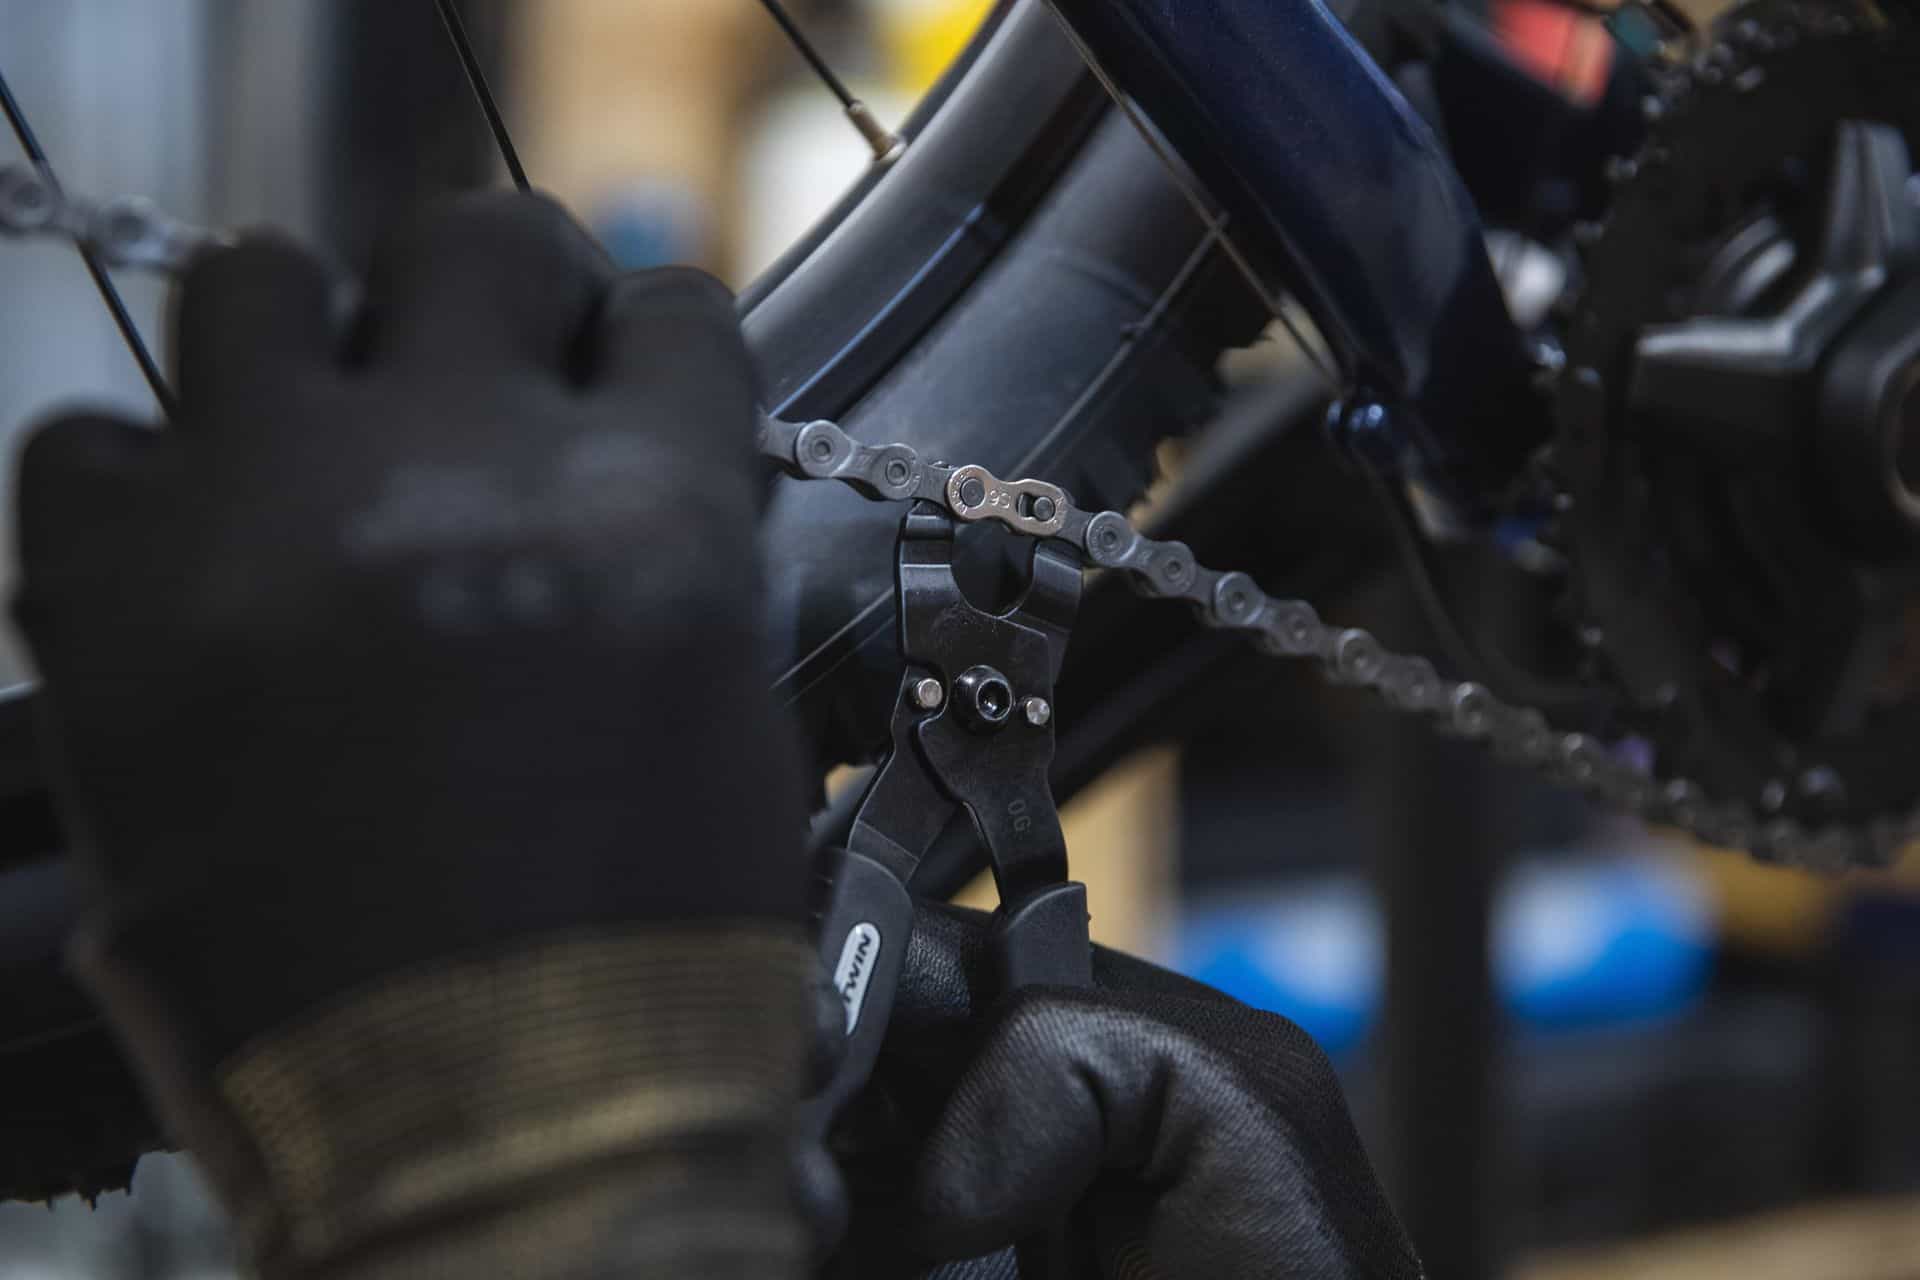 Wymiana łańcucha w rowerze - kiedy i jak go wymienić?